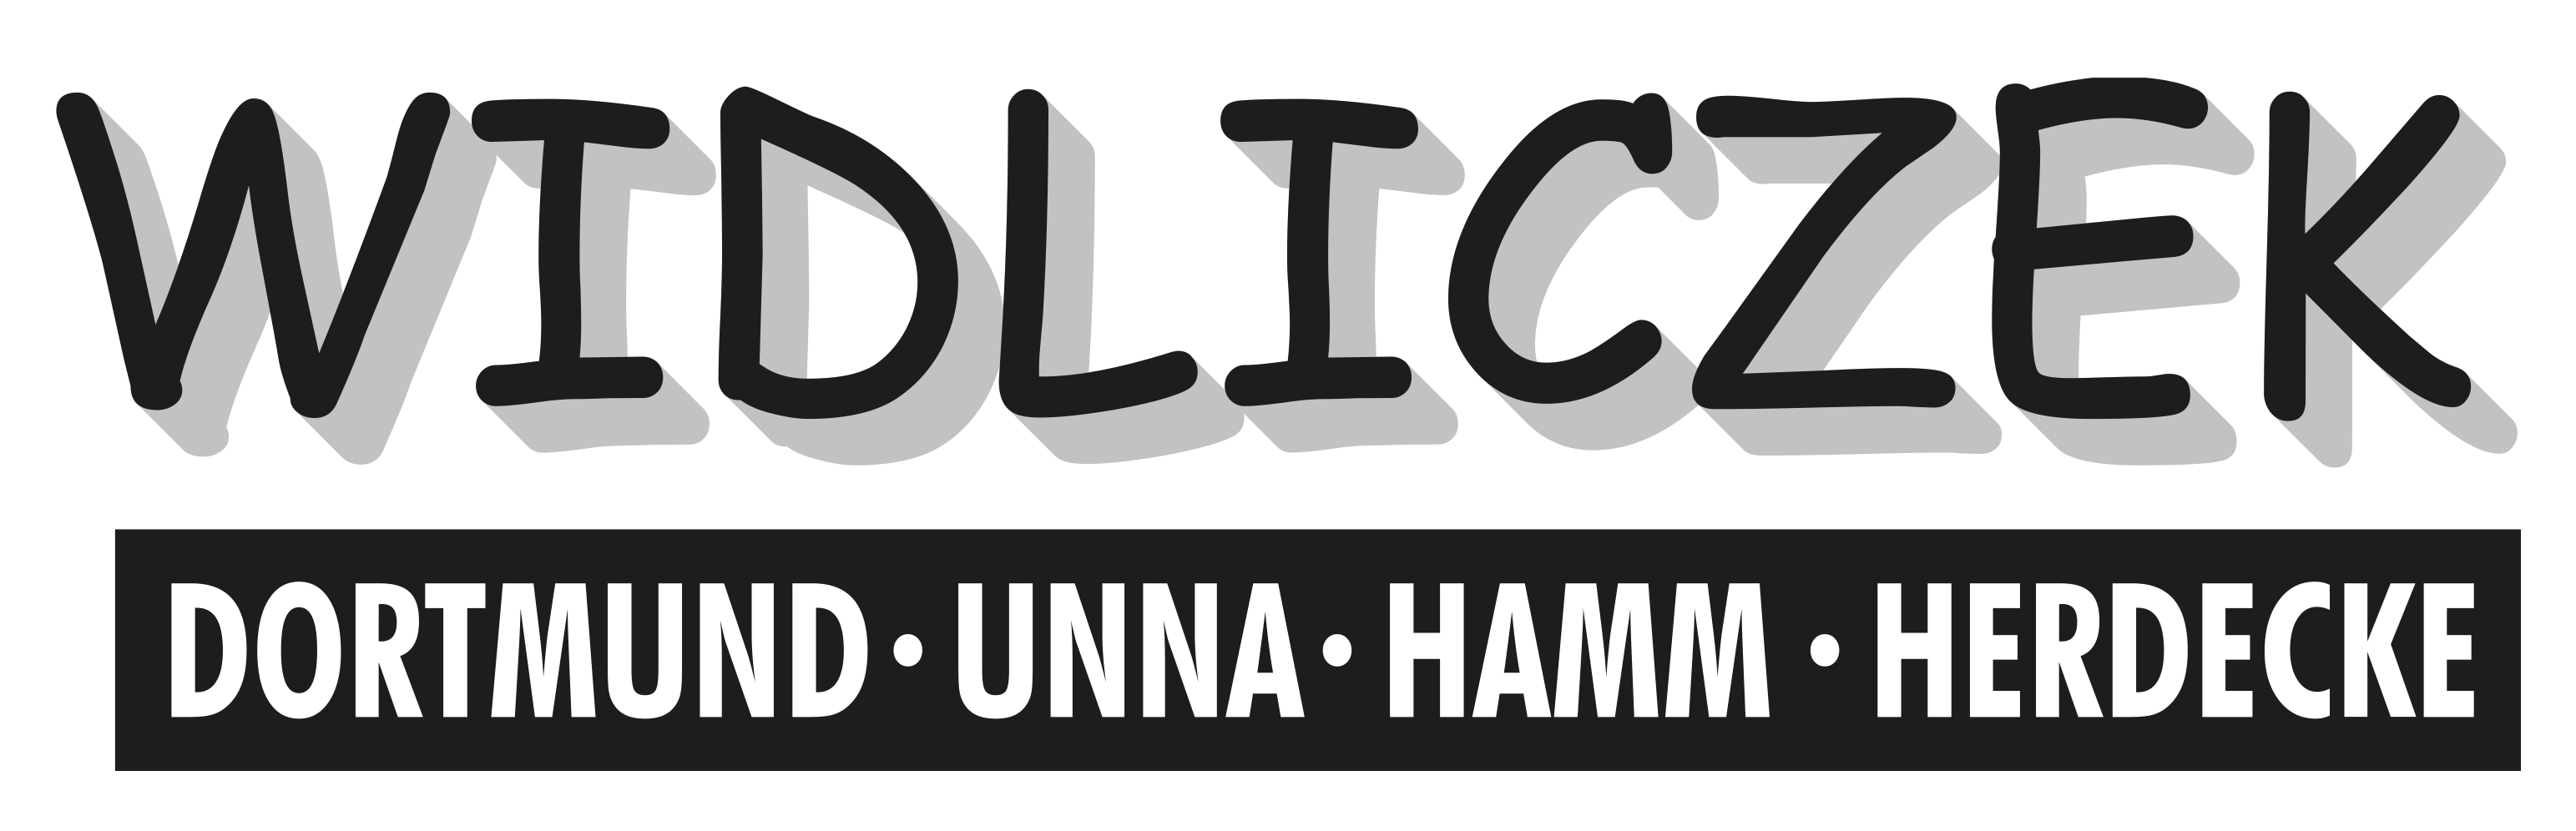 Abschleppdienst Widliczek Logo